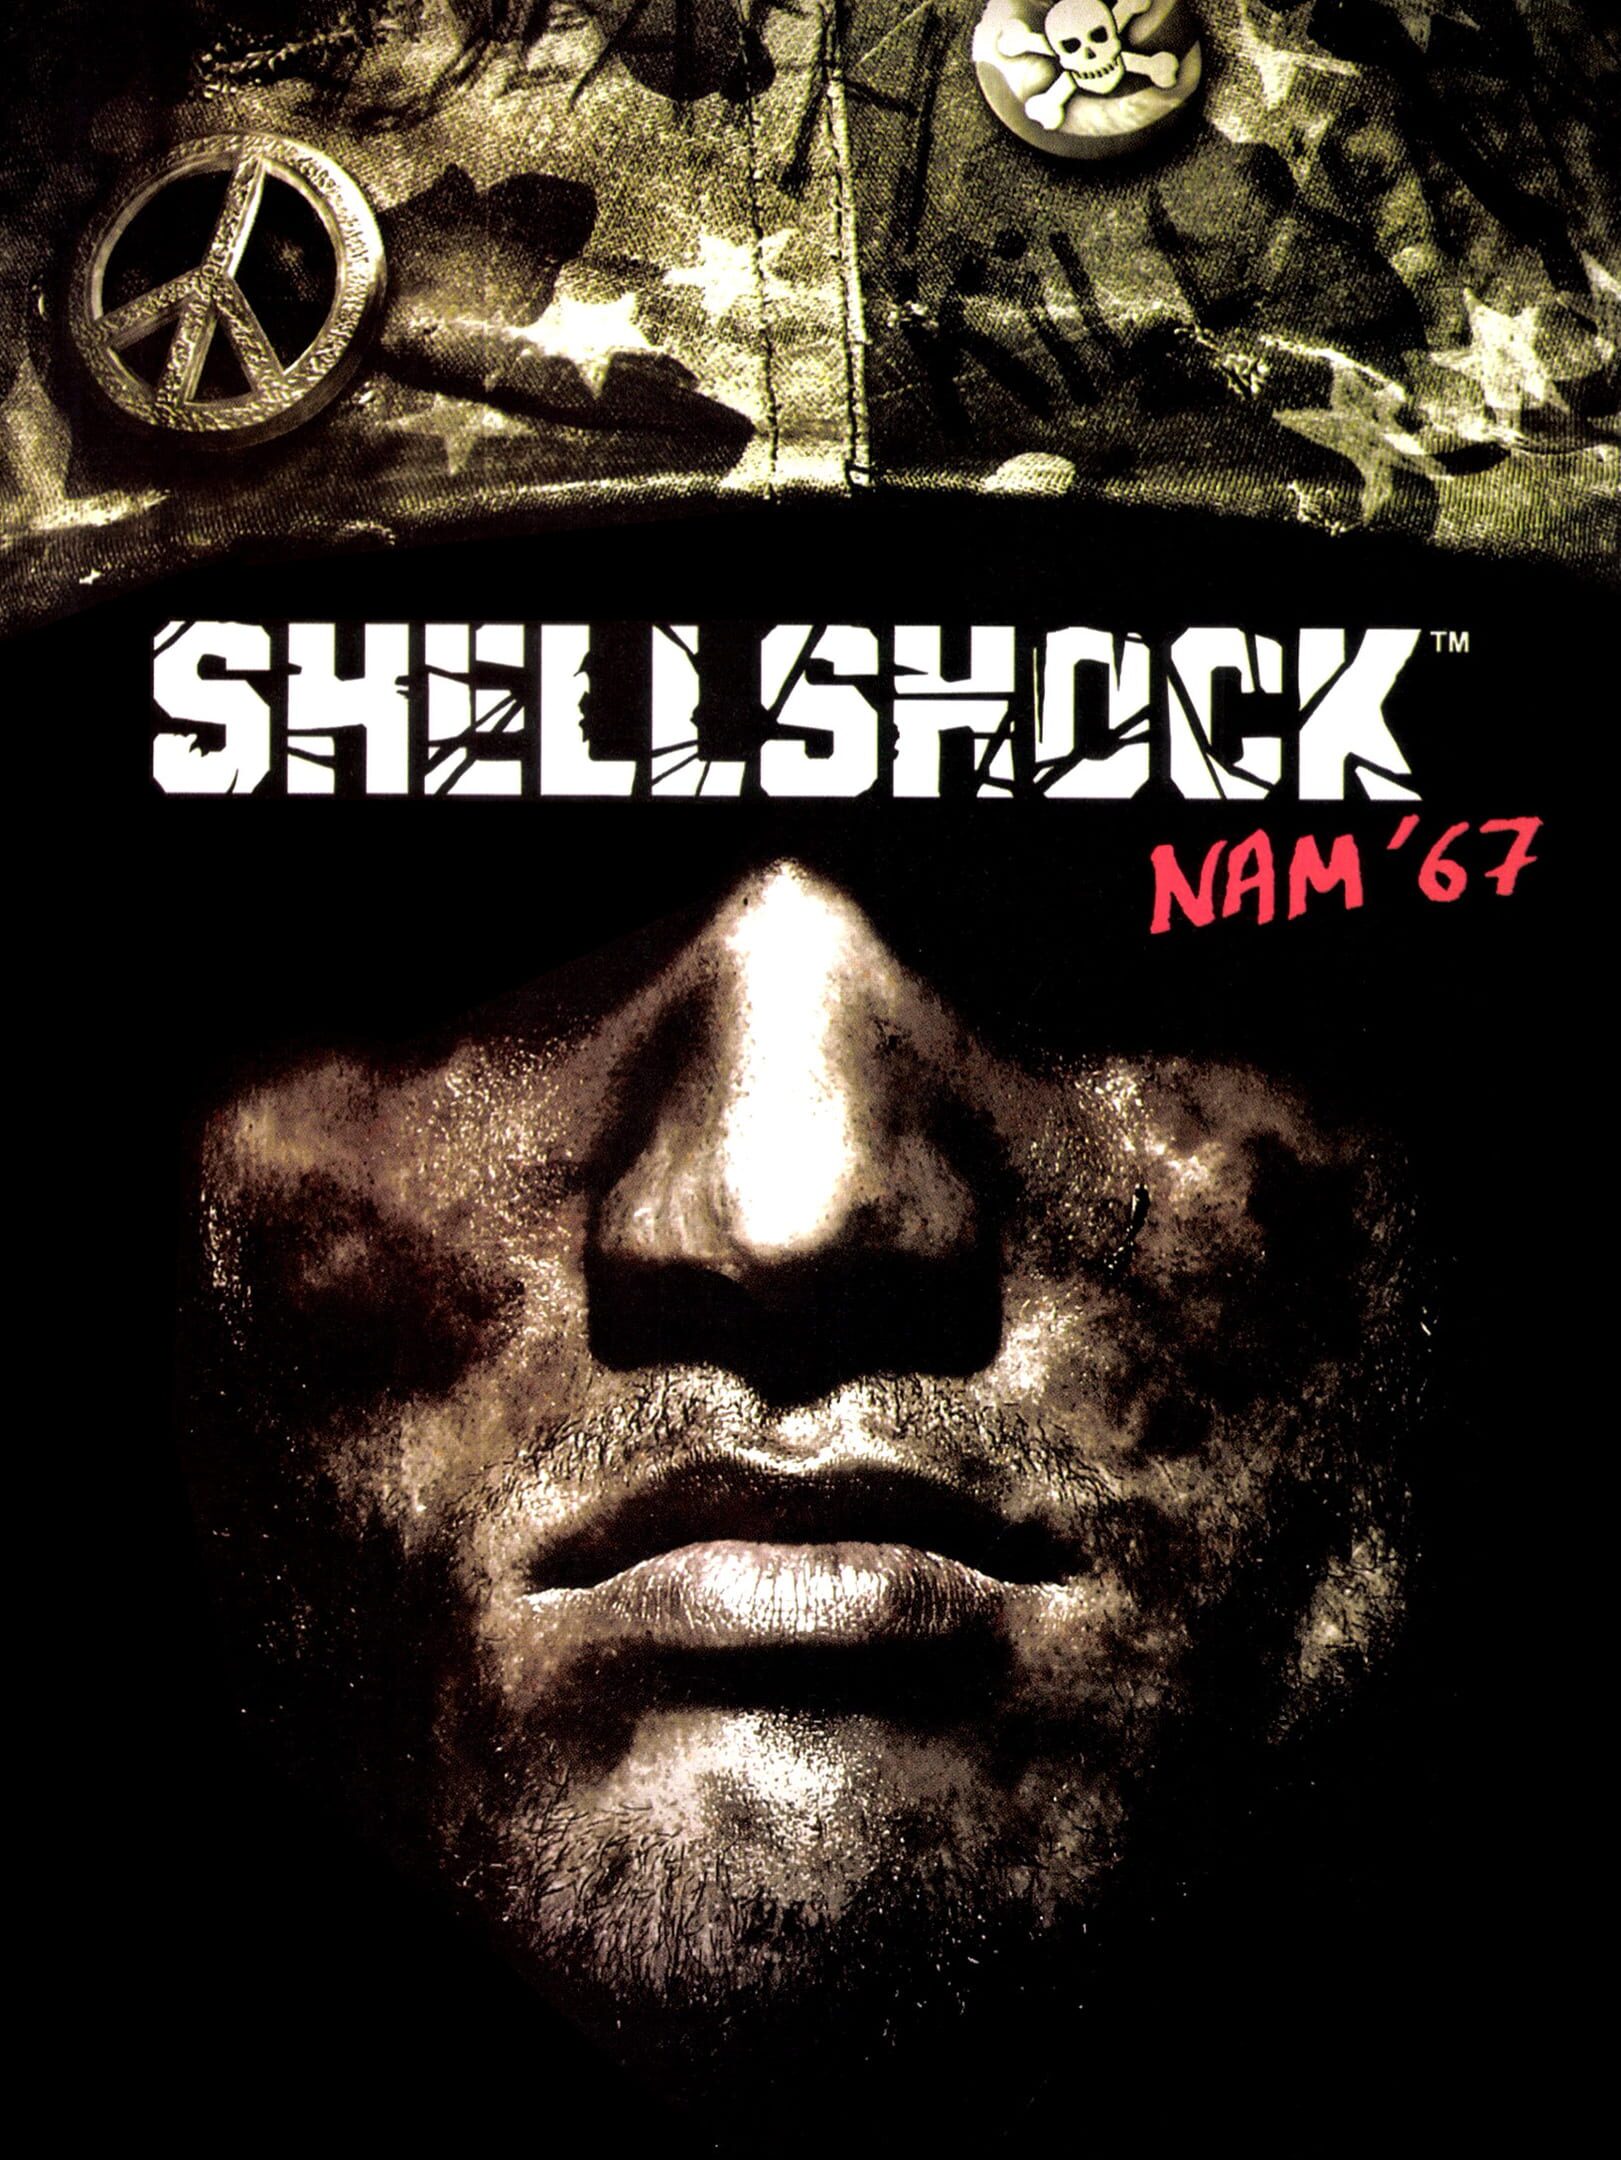 Kikizo  News: ShellShock: Nam '67: New Trailer